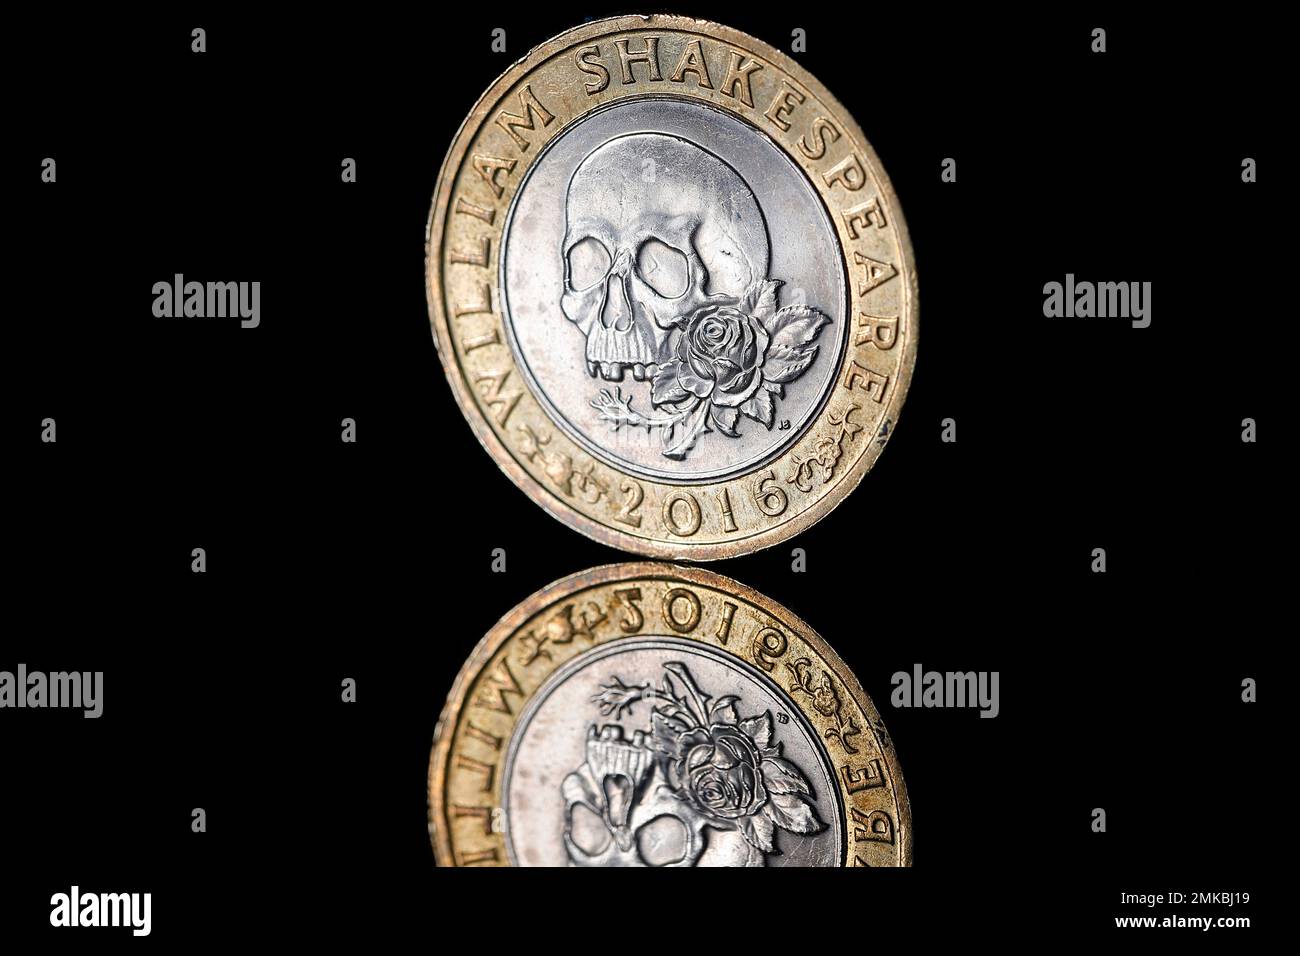 Eine britische £2-Euro-Münze zum Gedenken an William Shakespeare-Tragödien, herausgegeben von der Royal Mint im Jahr 2016 Stockfoto